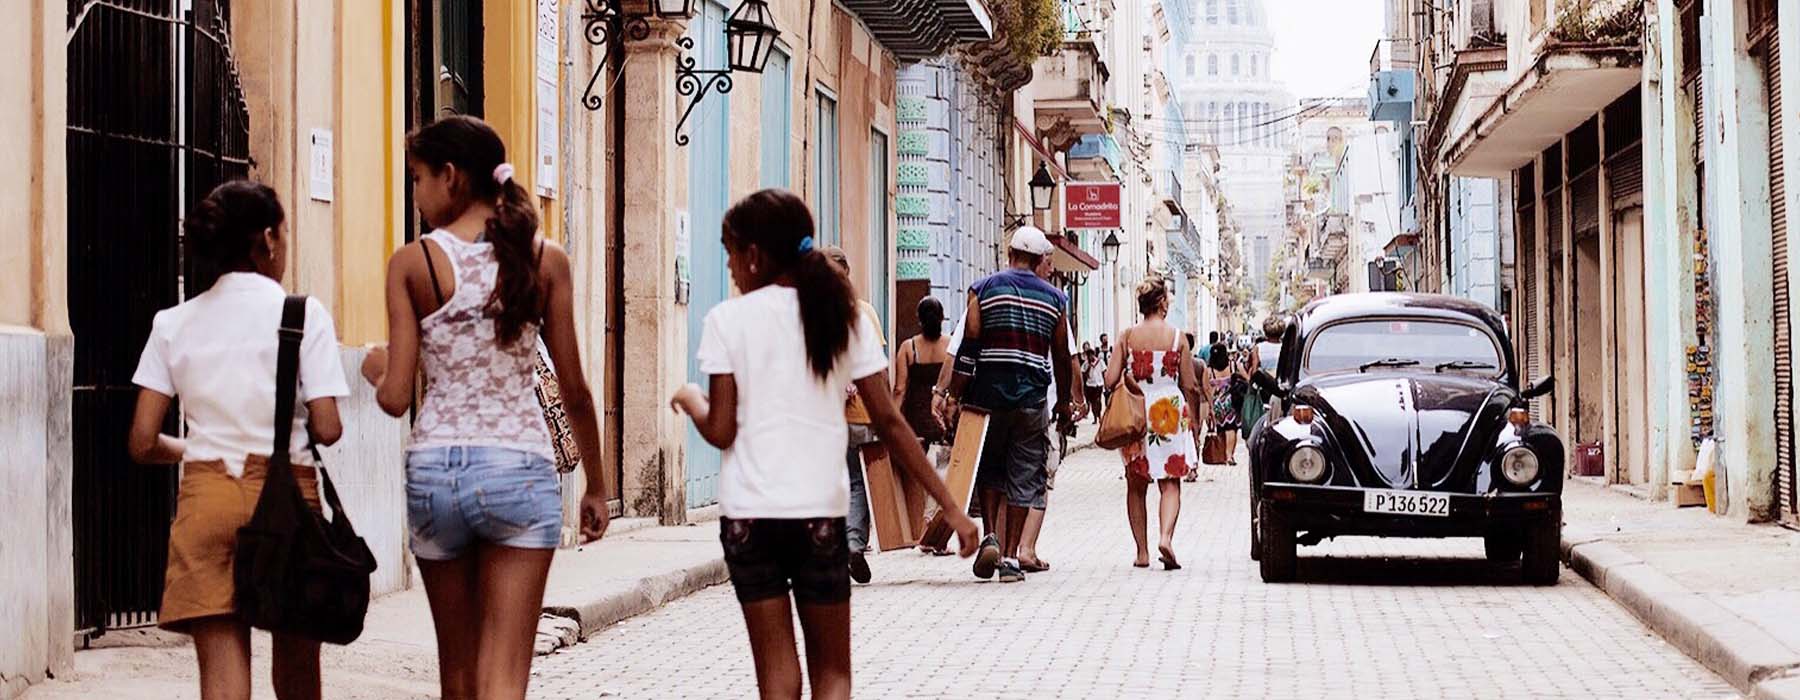 Vacances d'été Cuba